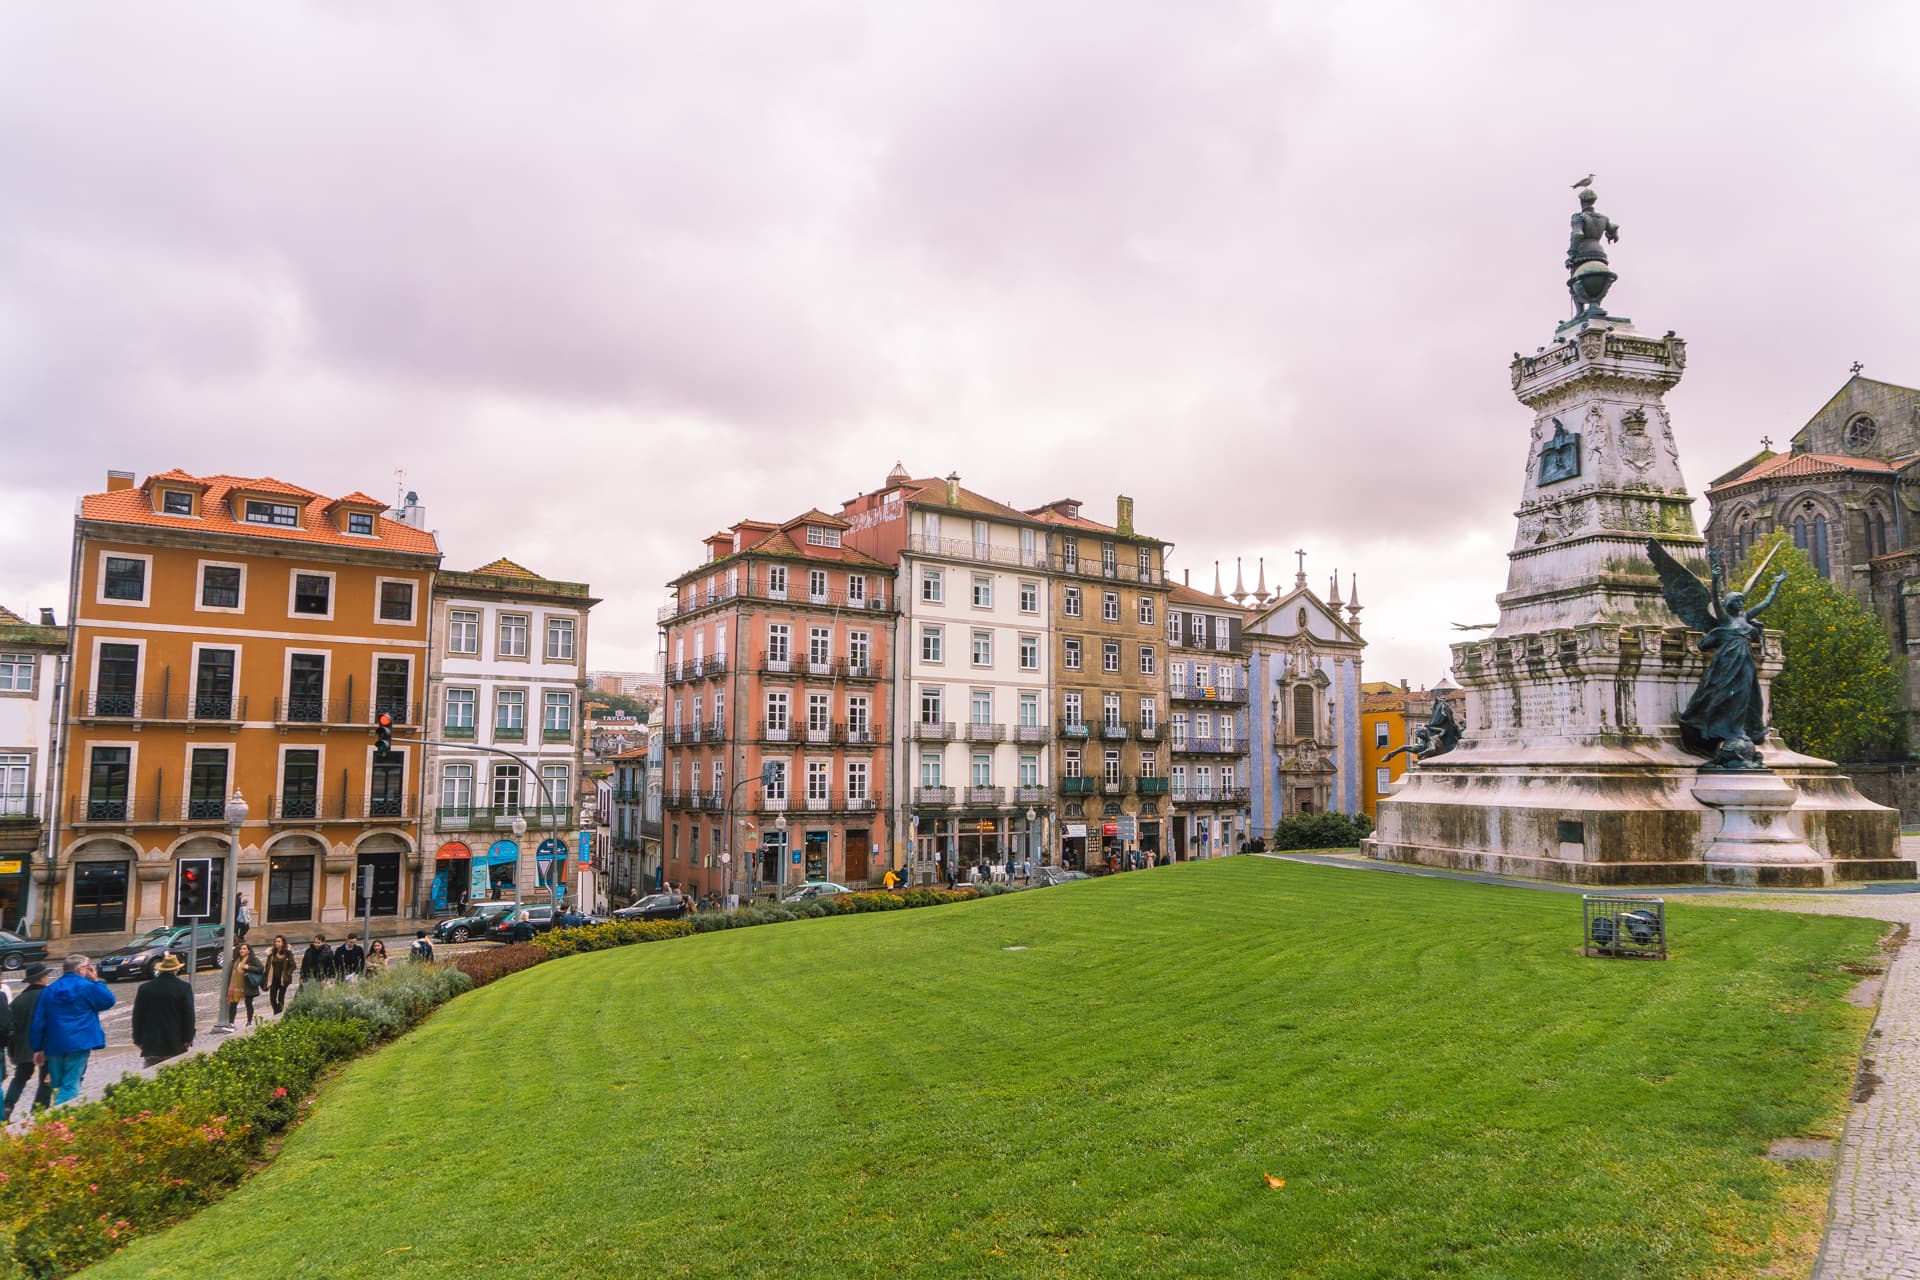 Atrakcje w Porto to także spacery po pięknych ulicach i placach